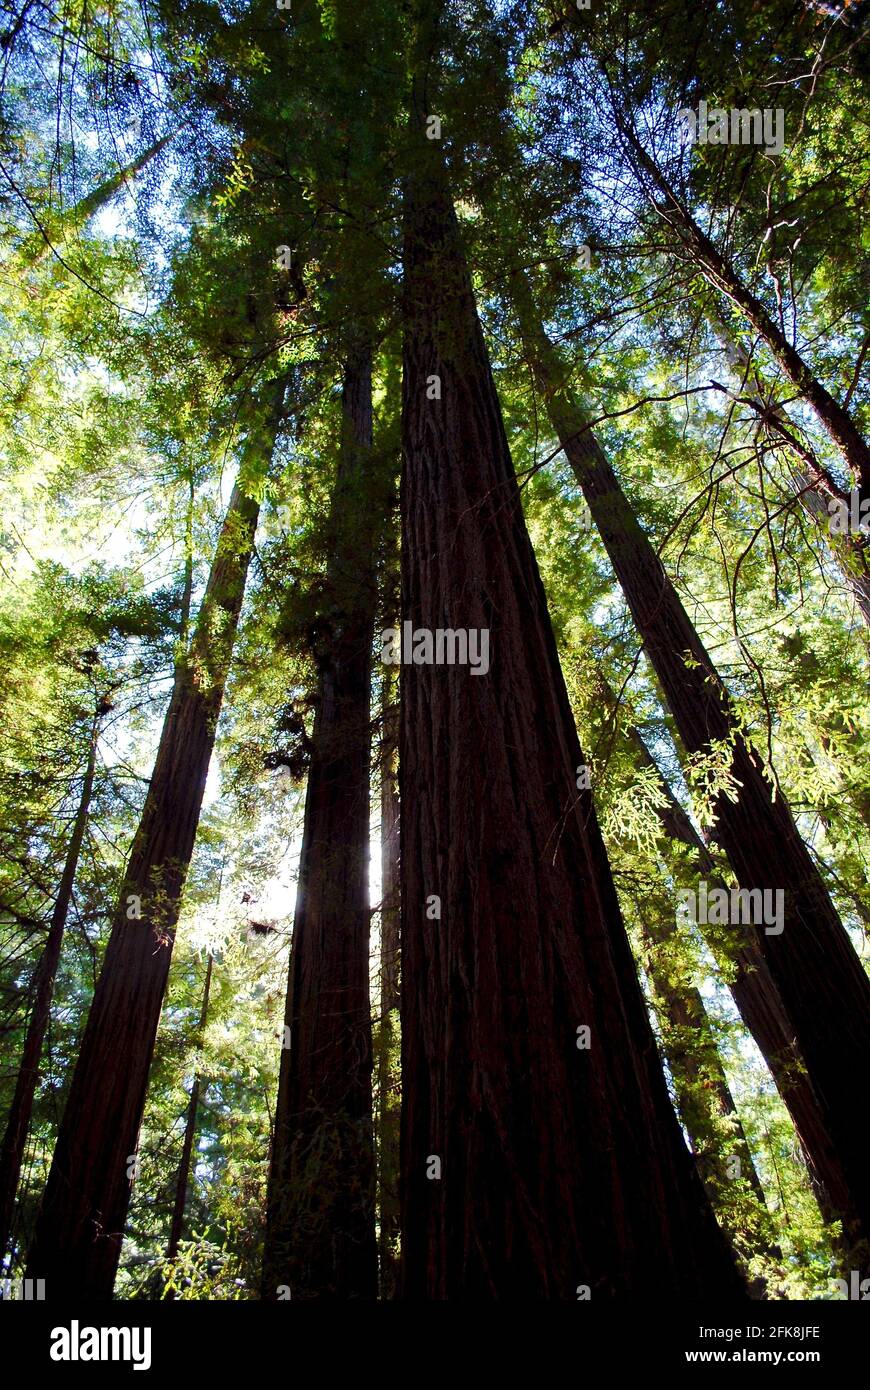 L'Humboldt Redwoods state Park è un parco statale della California, Stati Uniti, che ospita la Rockefeller Forest, una vecchia foresta di sequoie costiere. Foto Stock